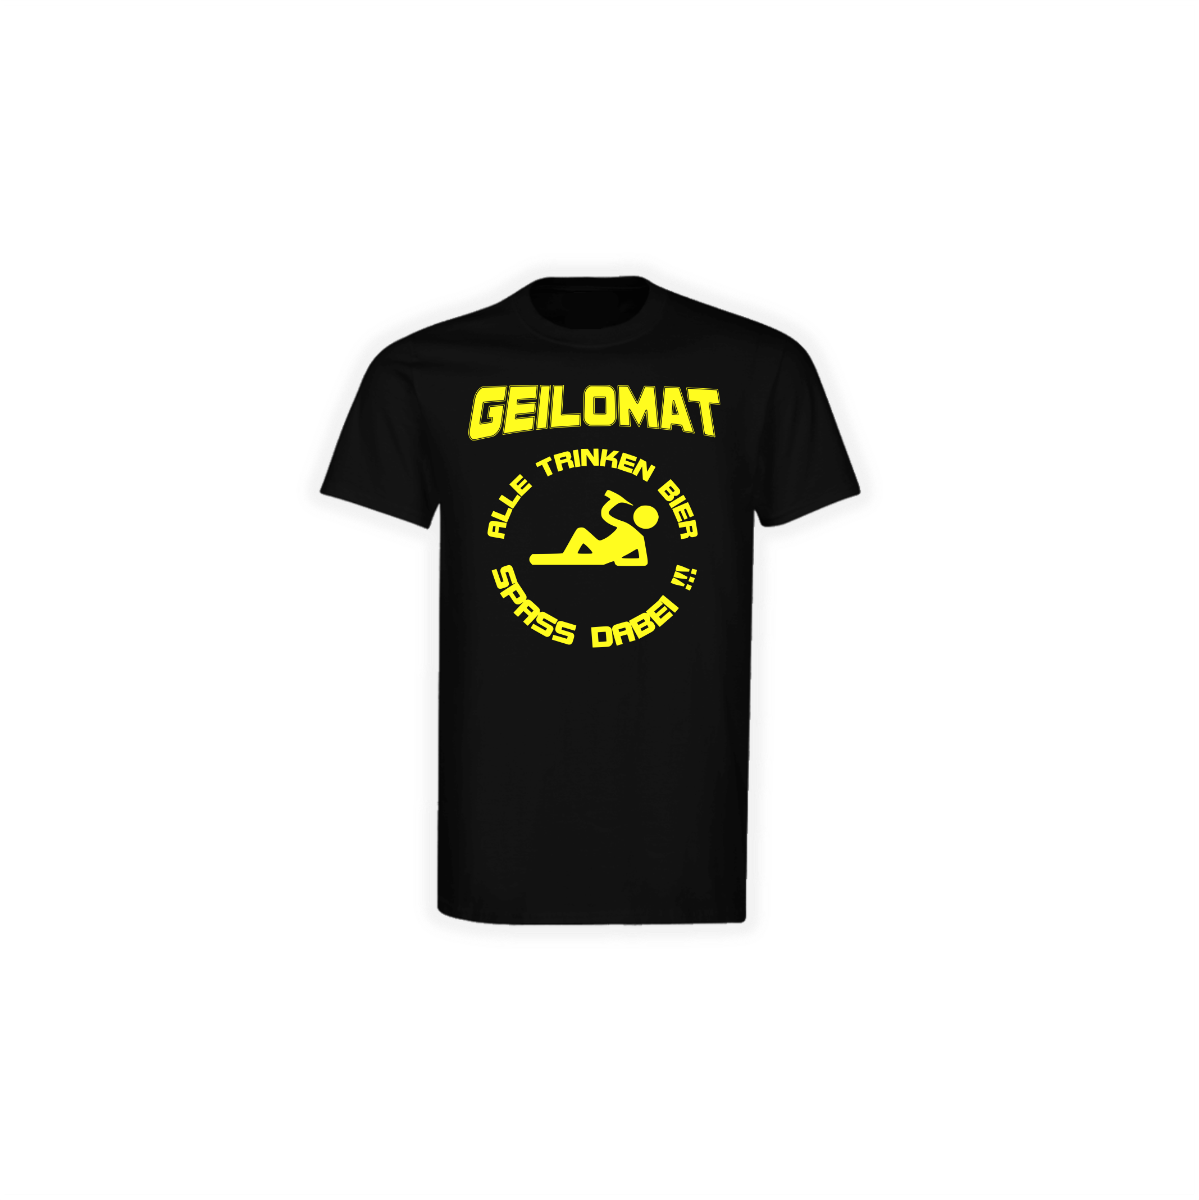 T-Shirt "ALLE TRINKEN BIER" schwarz, gelber Druck